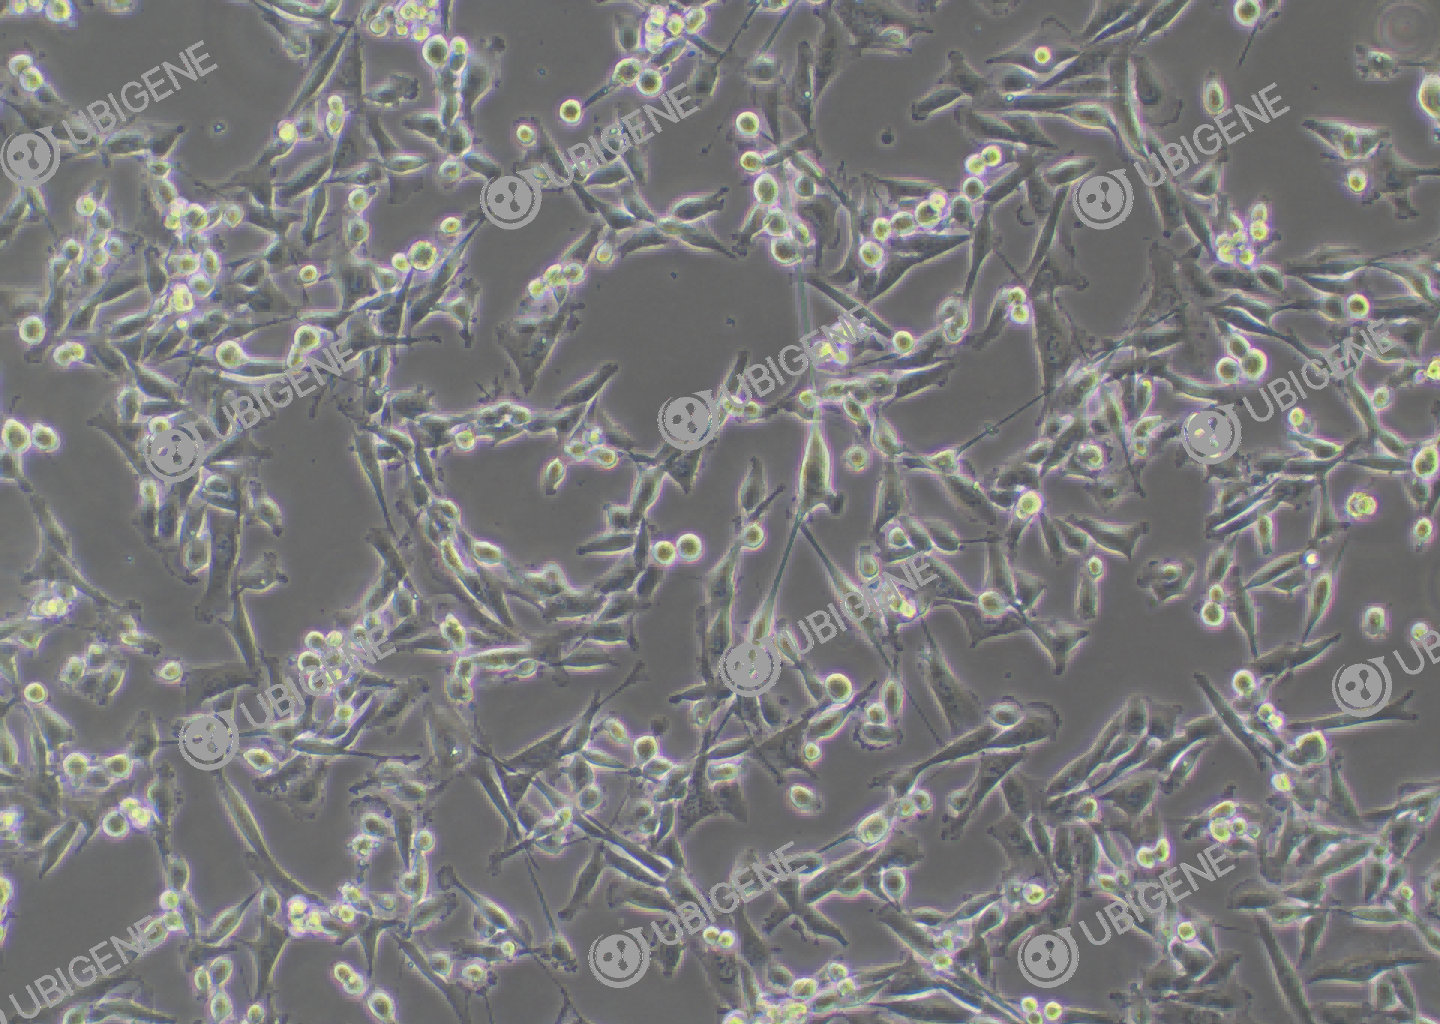 人肺腺癌细胞(NCI-H1975)细胞形态培养图